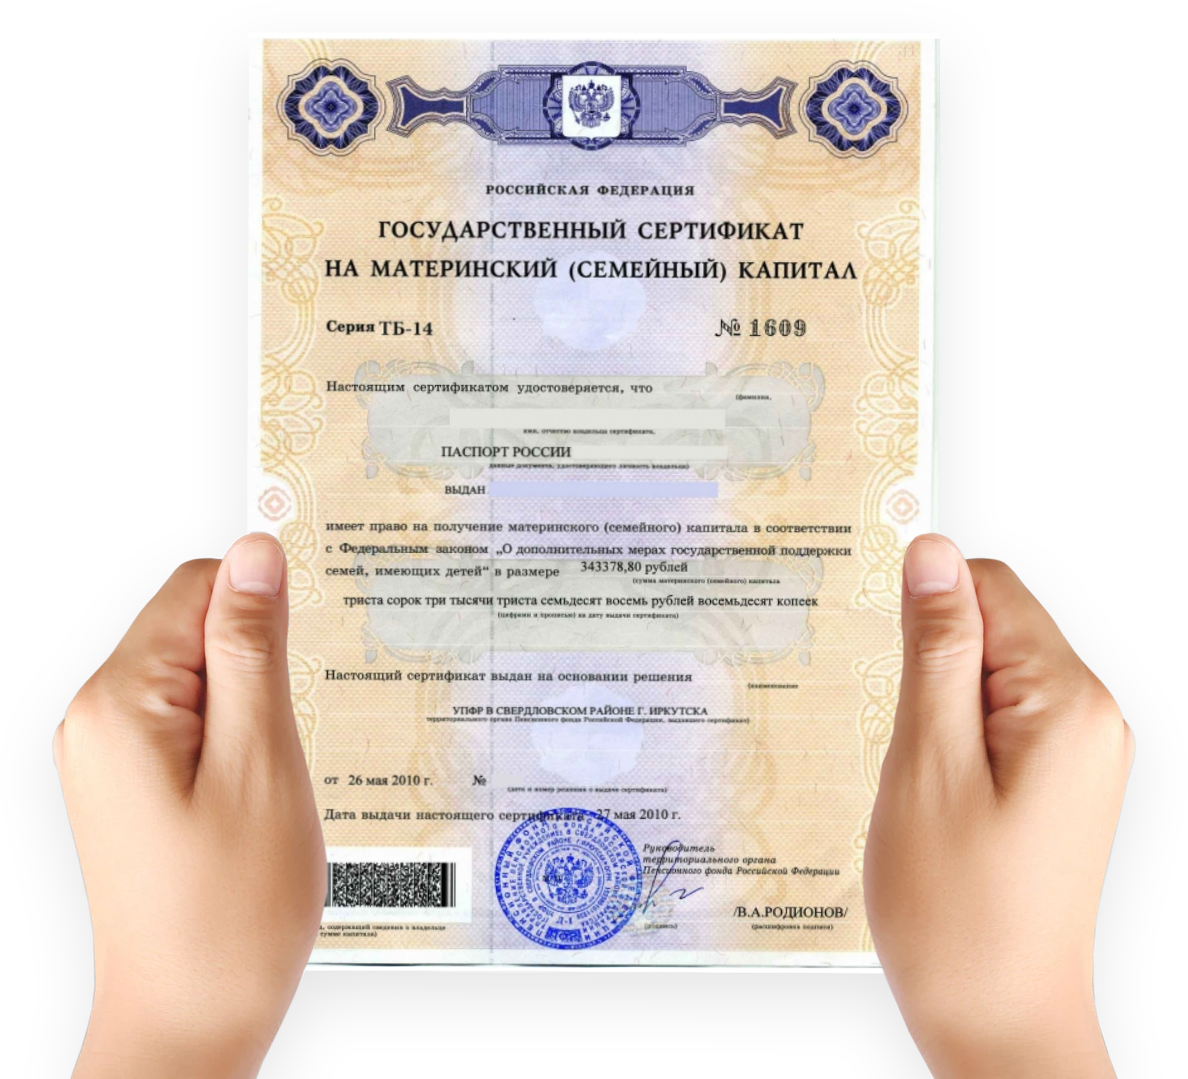 Сертификат для покупки автомобиля для семьи. Как выглядит сертификат на мат капитал. Как выглядит мат капитал сертификат в электронном виде. Как выглядит документ на материнский капитал. Материнский капитал на второго ребенка сертификат как выглядит.